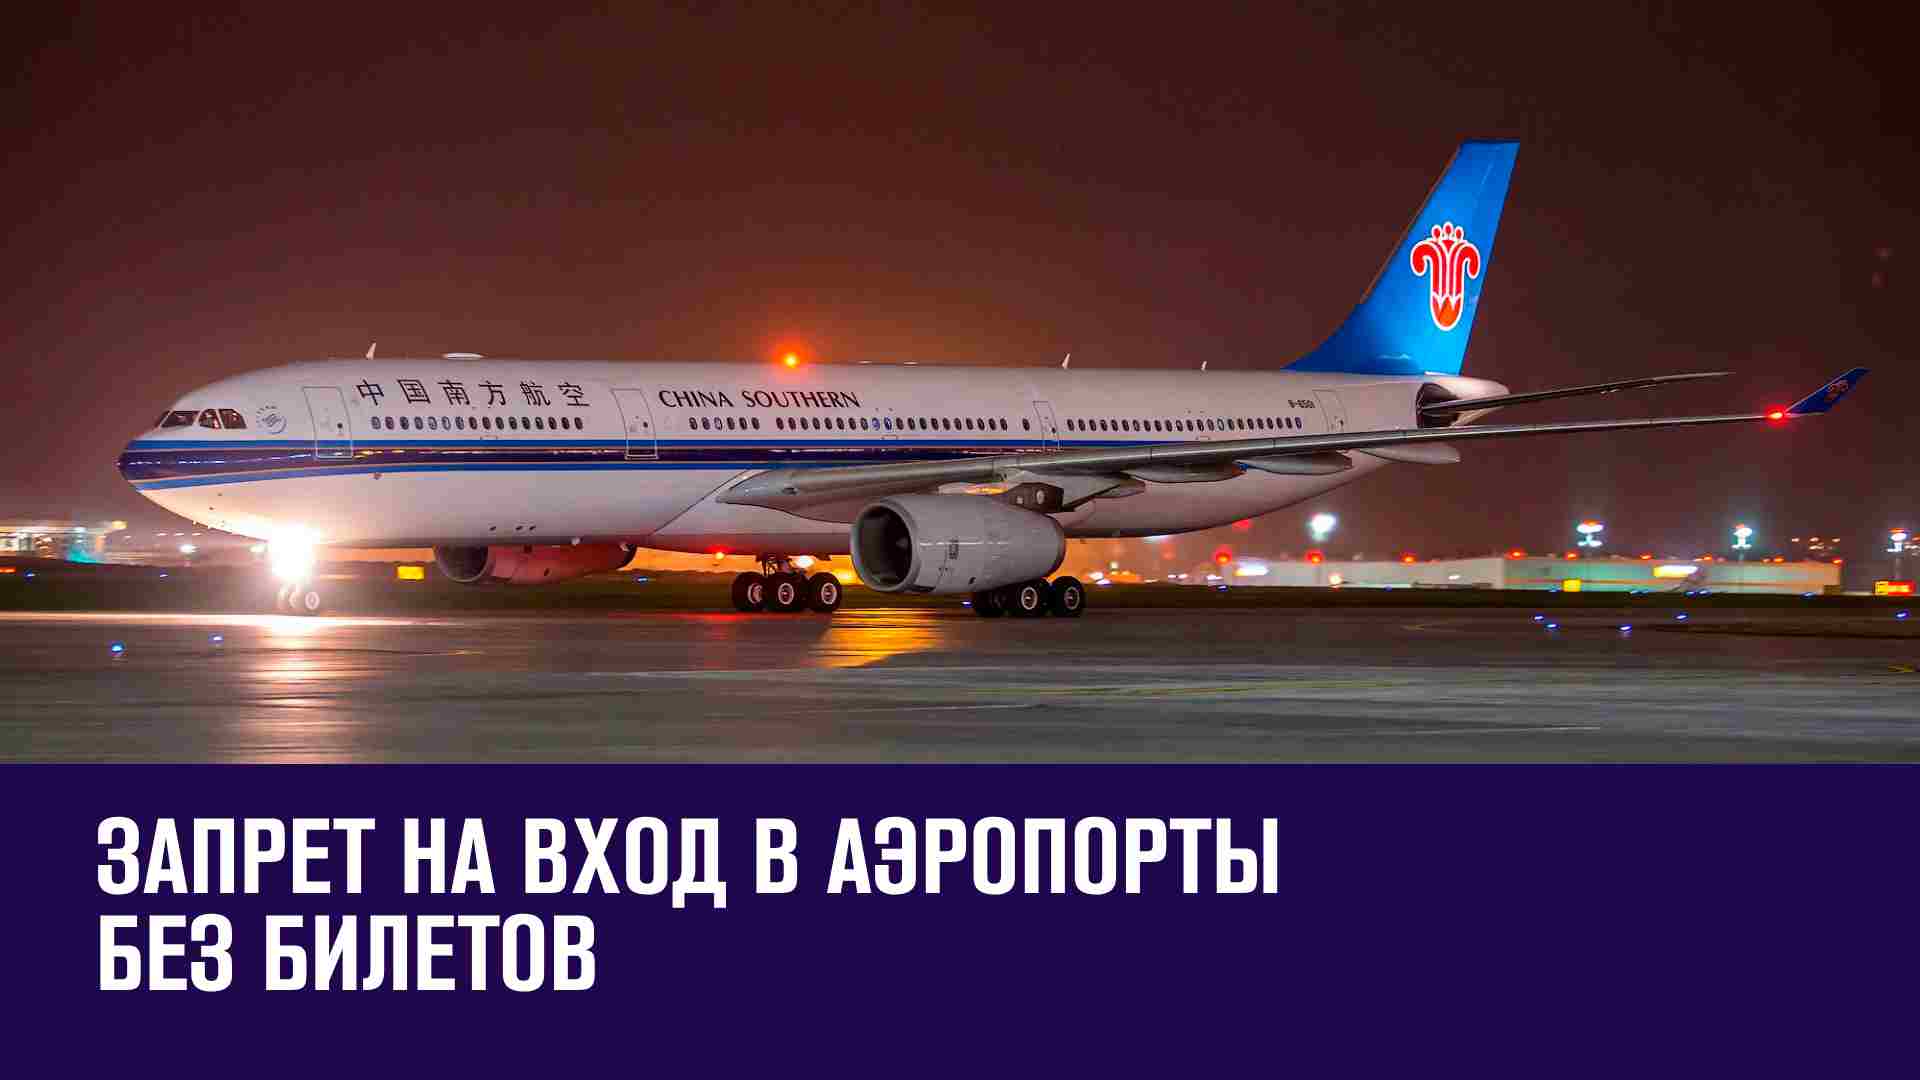 С 1 сентября хотят запретить вход в аэропорты без билетов - Москва FM